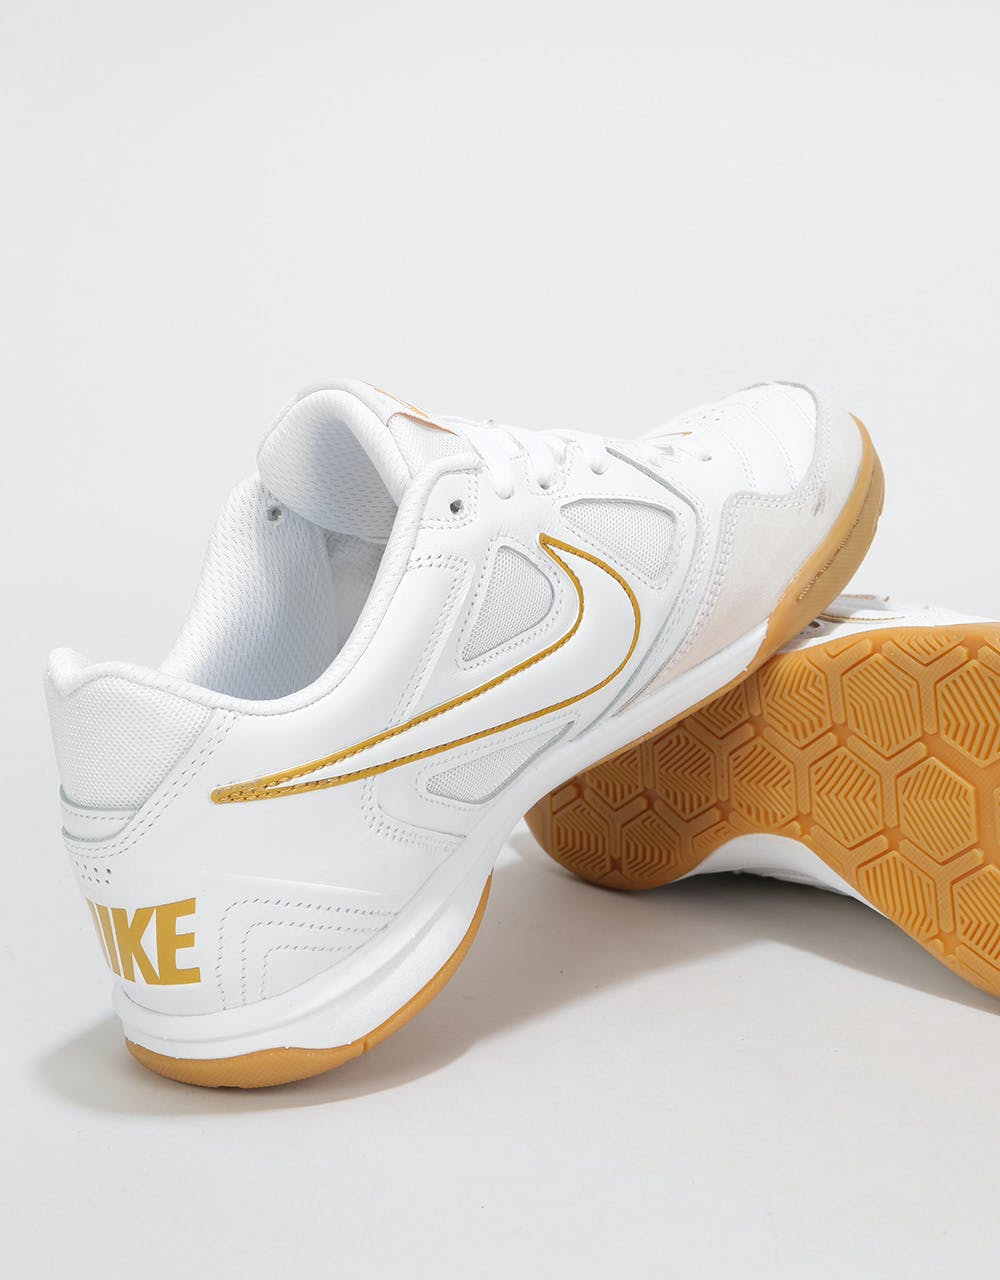 Nike SB Gato Skate Shoes - White/White-Metallic Gold